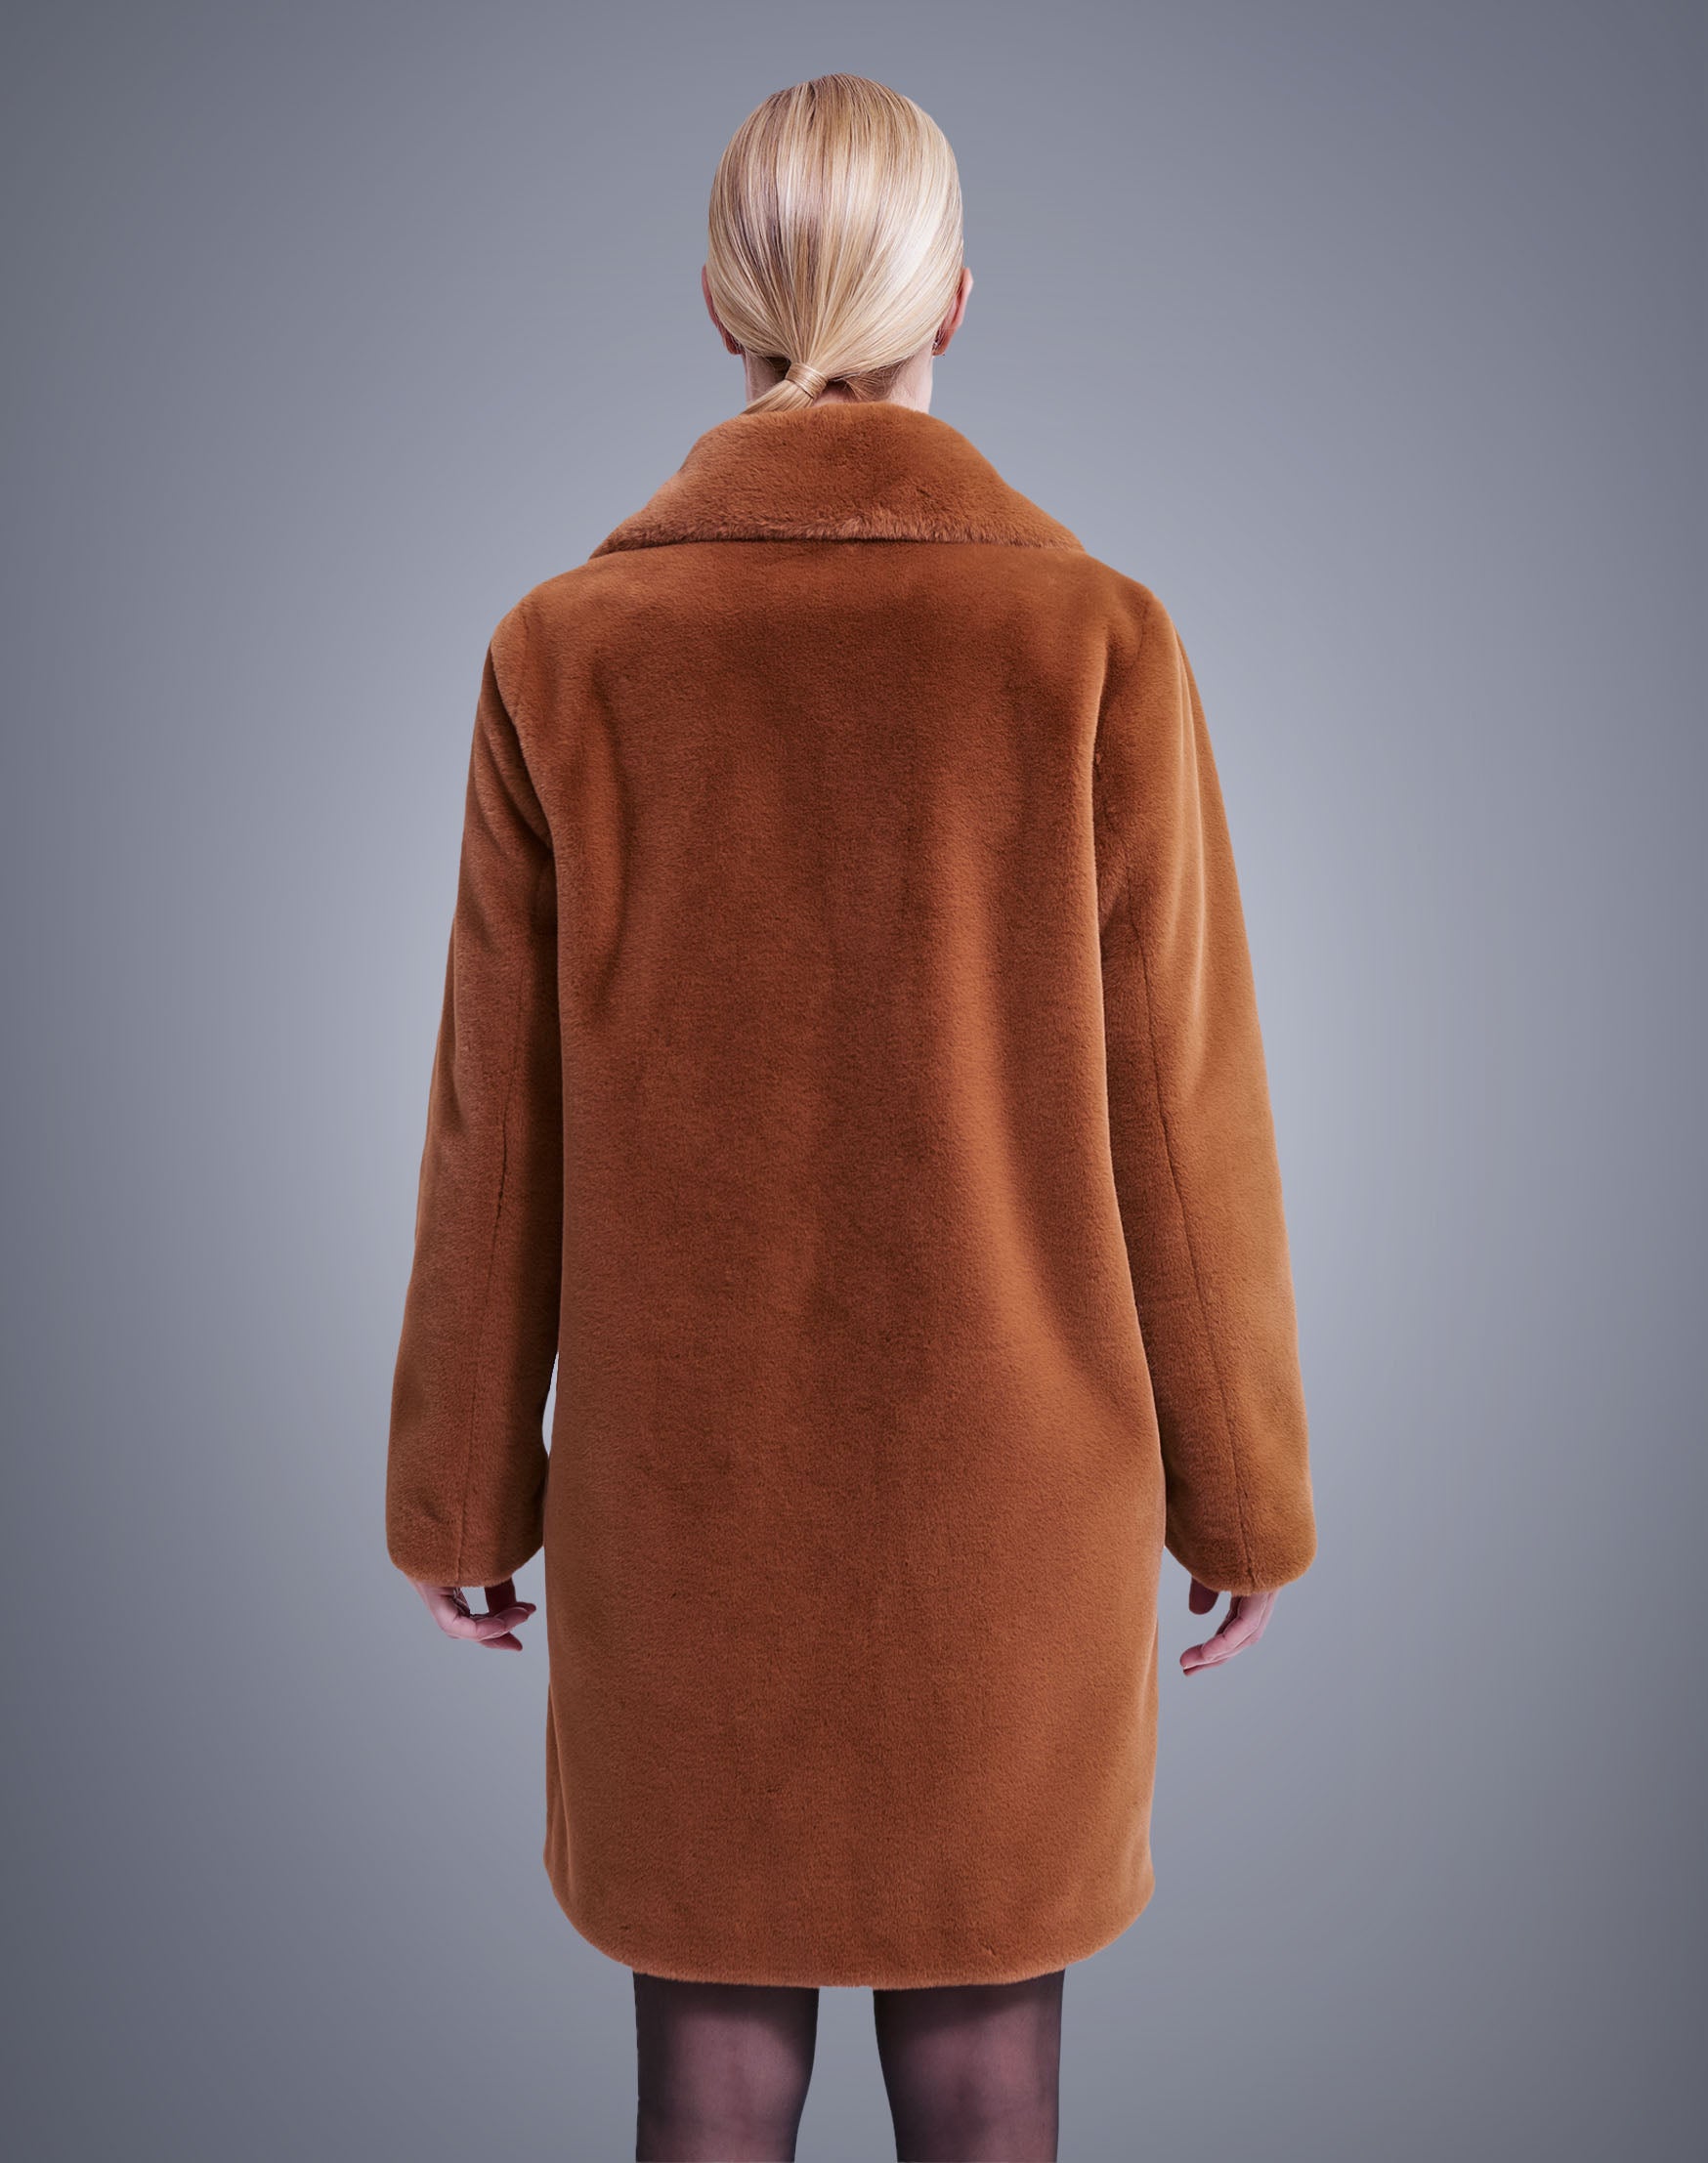 Joseph Ribkoff Rust Faux Fur Coat - Style : 213910